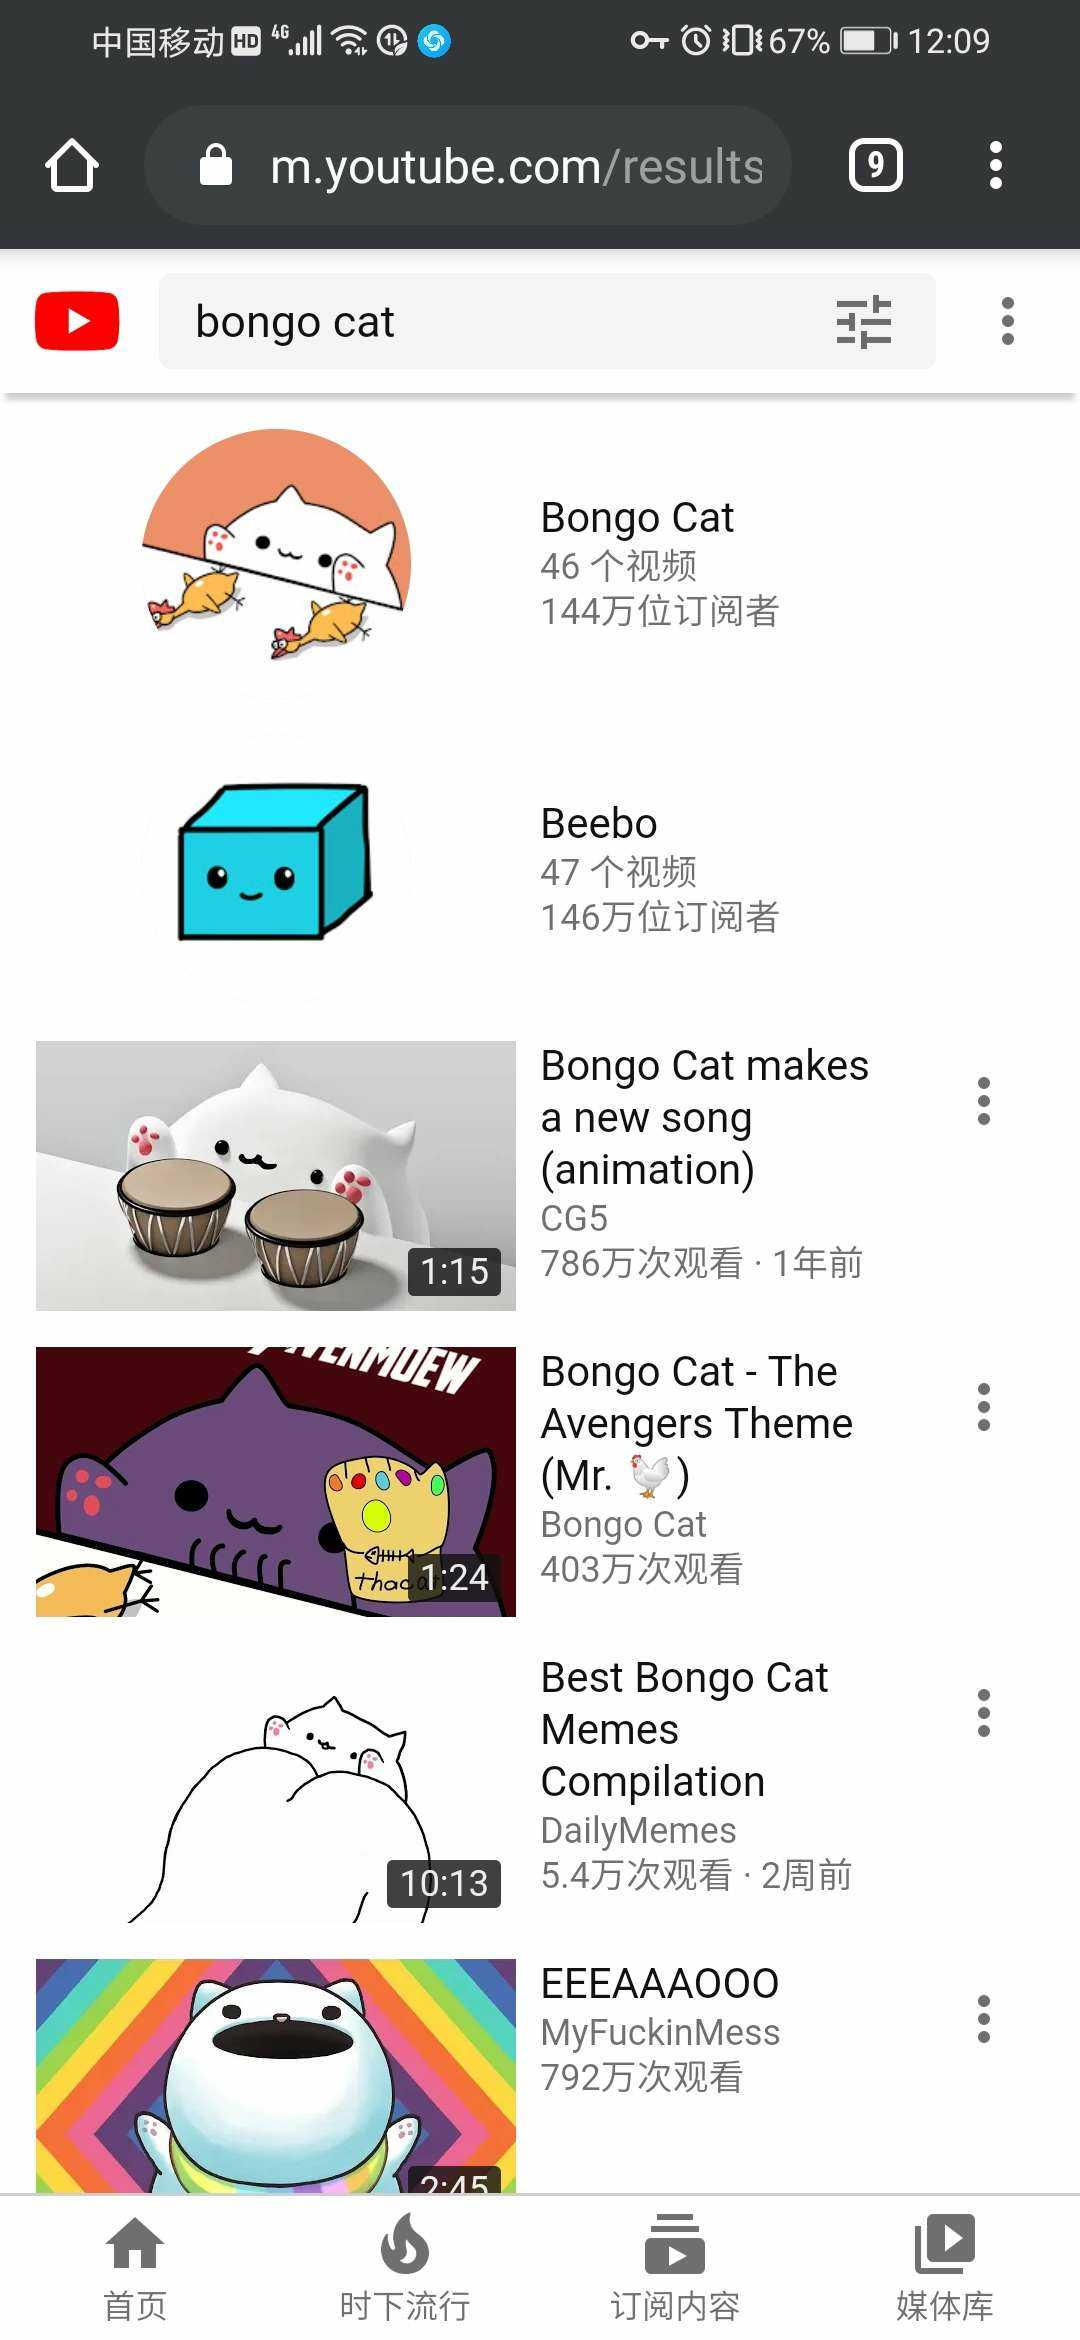 bongocat猫咪自启动图片